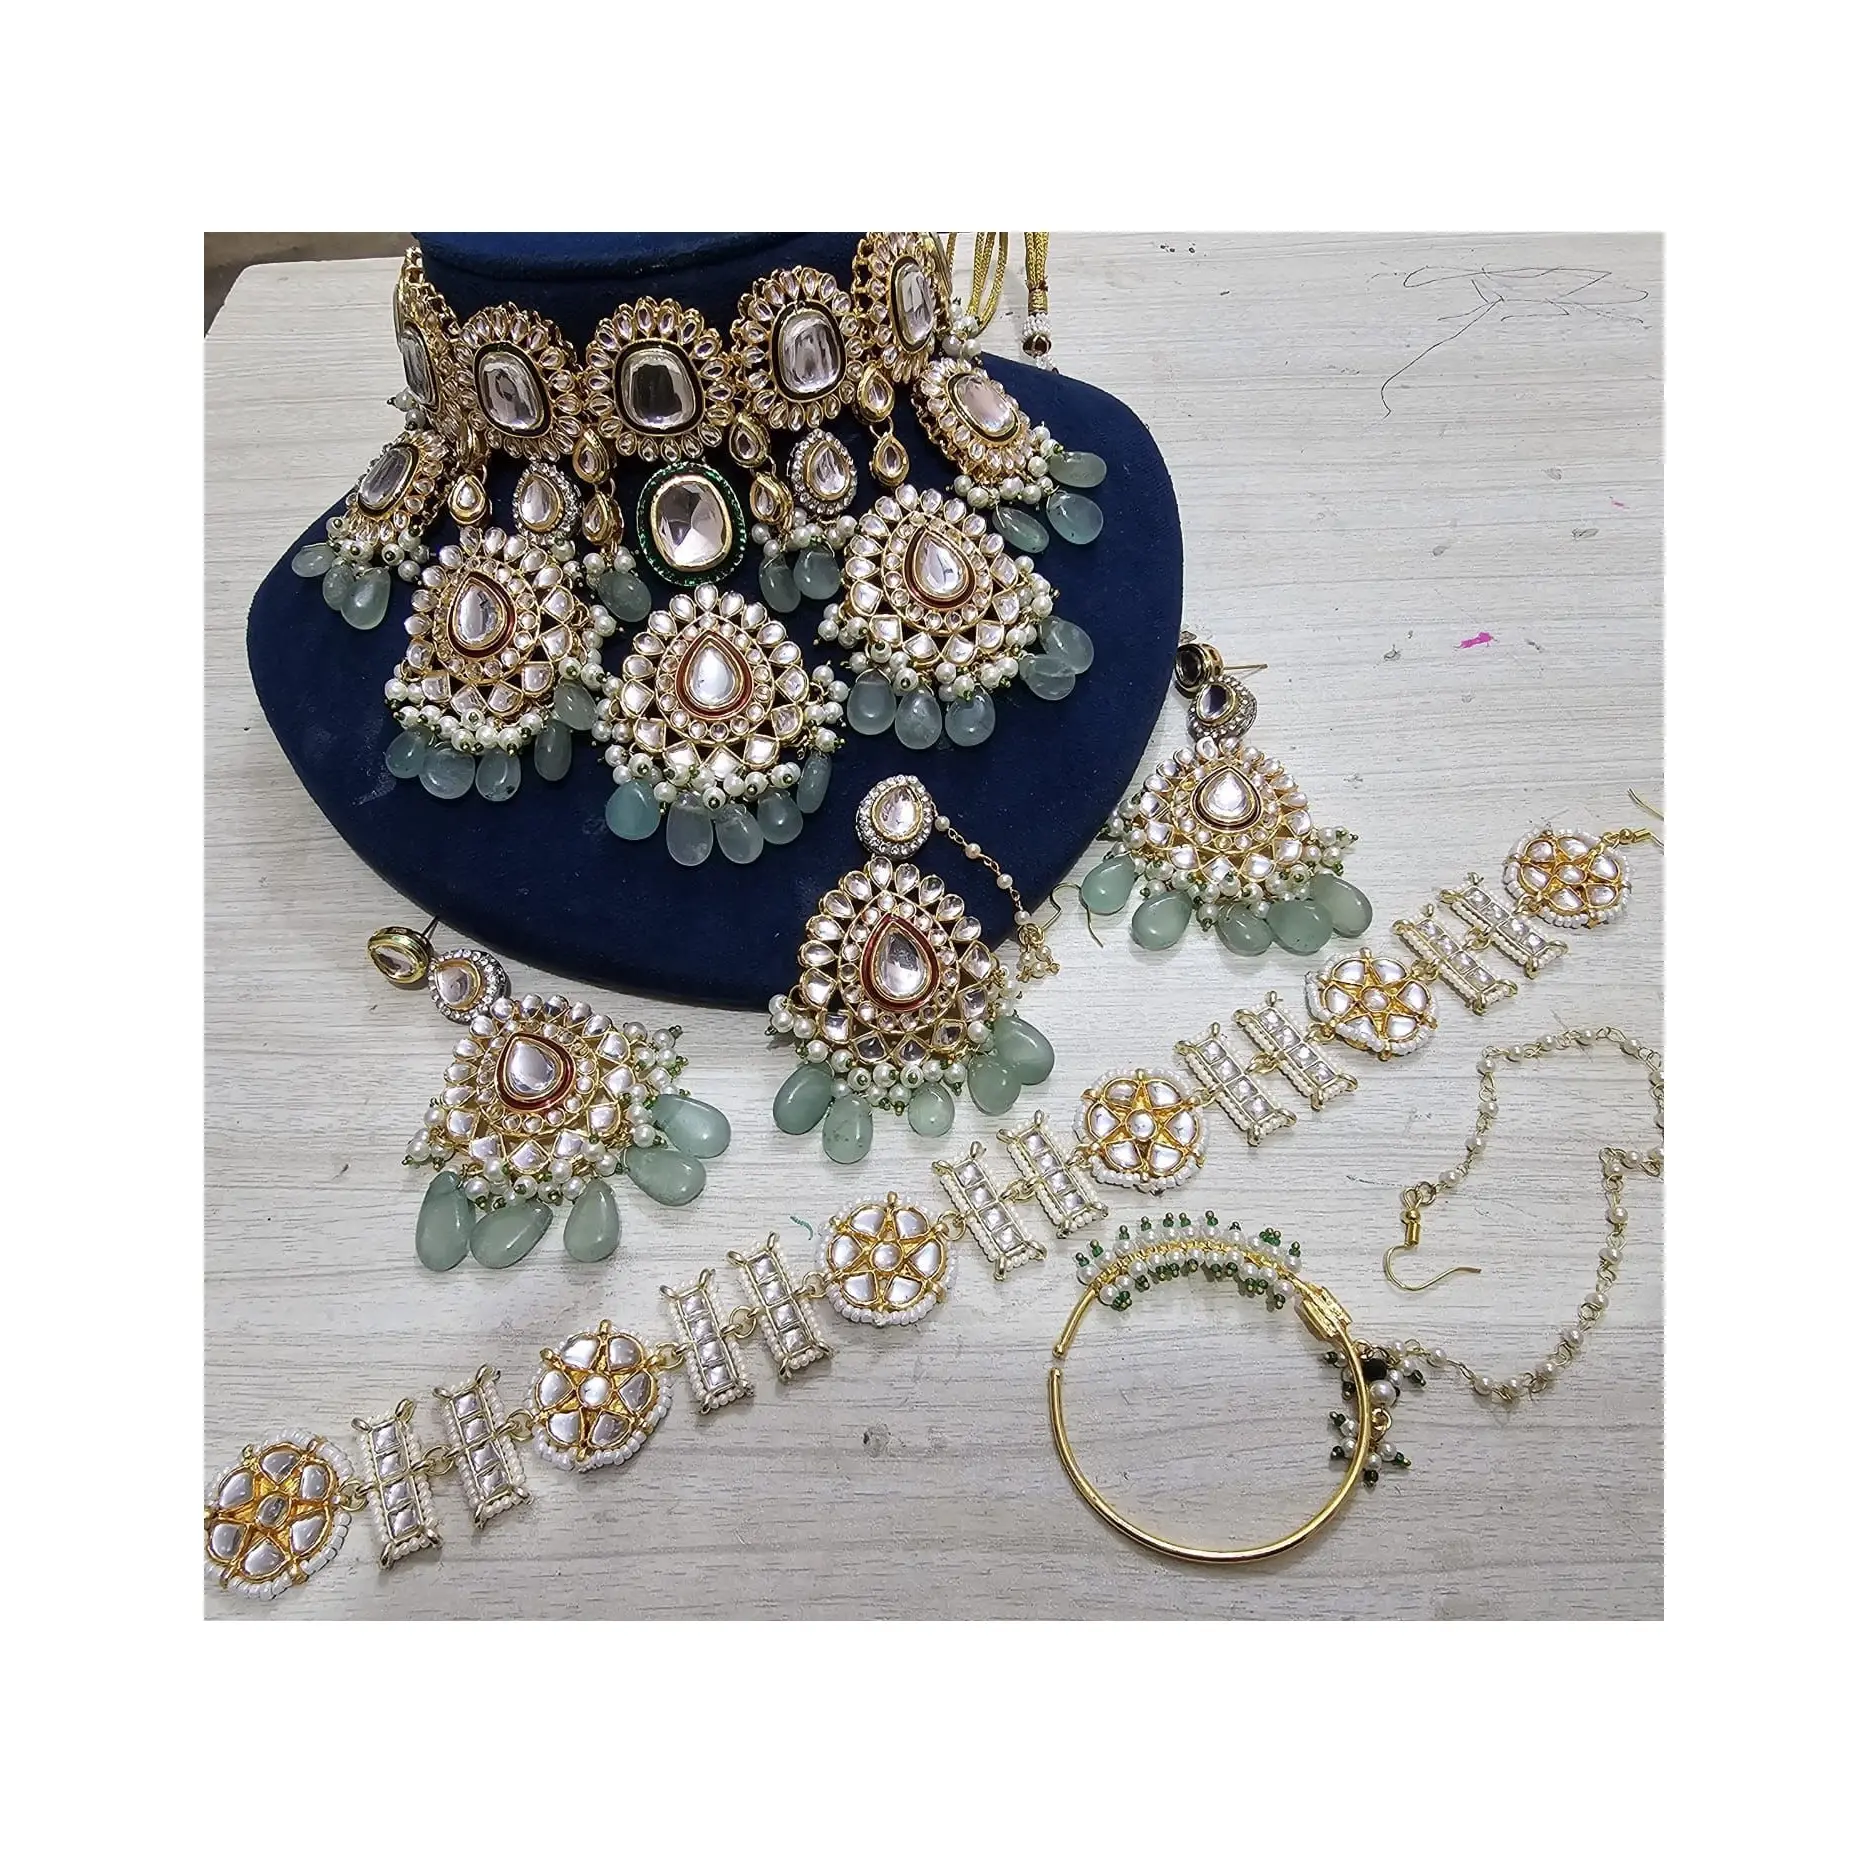 Set perhiasan pengantin berkelas dan berat desain Modern dengan Anting dan Maangtika Tersedia dengan harga terjangkau dari India